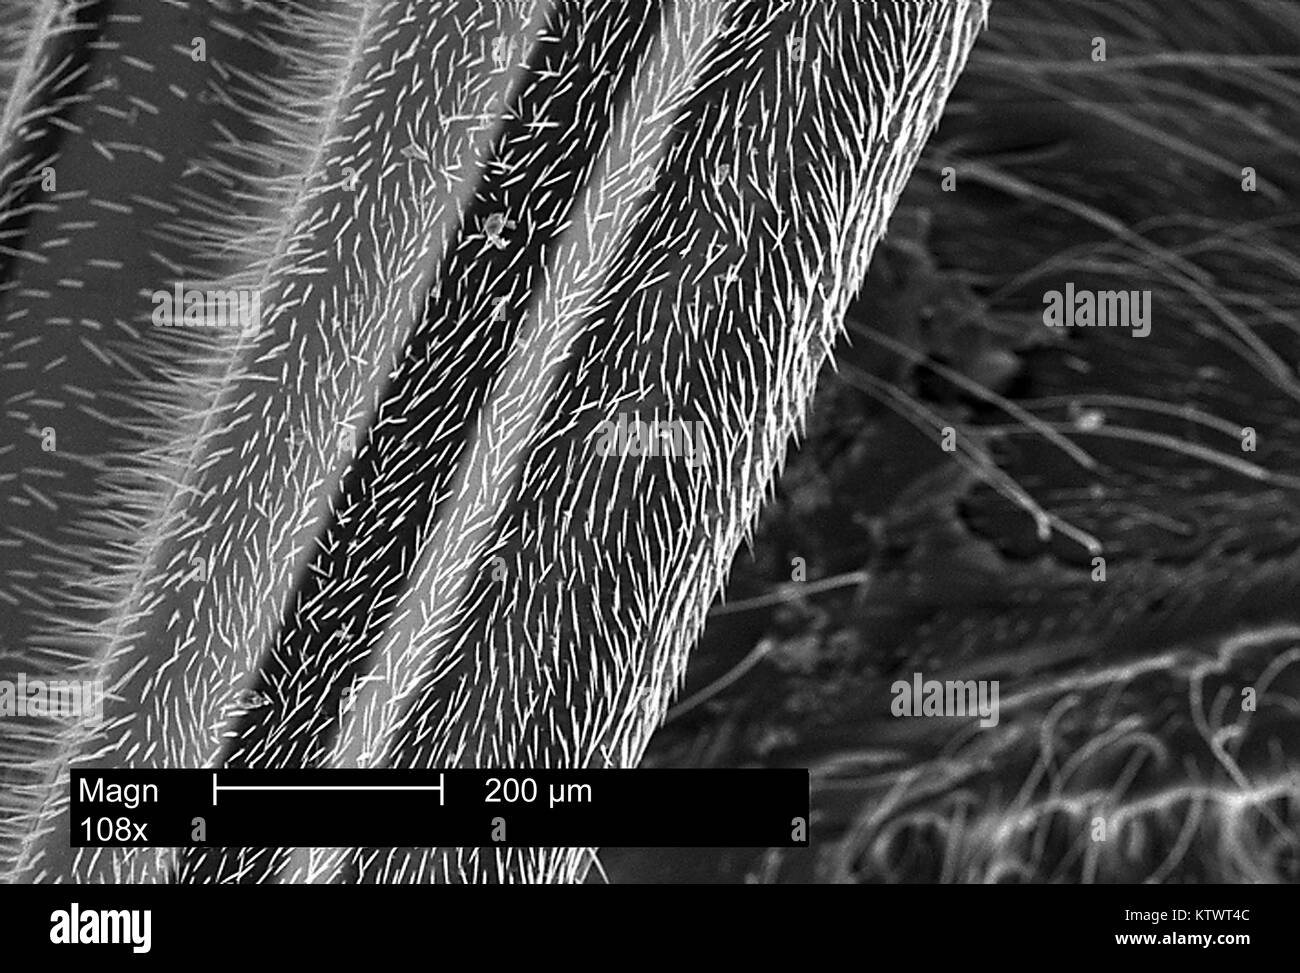 Dies ist ein Scanning Electron Micrograph (SEM) eines Wasp Anhängsel enthüllt kleine, hoch empfindliche Haare auf seiner Oberfläche 108 X vergrößert Als seten bekannt, diese Haare handeln, um die Ebenen der Empfindlichkeit von der Wasp Umwelteinflüsse, wie Wind, Feuchtigkeit zu erhöhen, und die Temperatur. Mit freundlicher Genehmigung der CDC, 2002. Stockfoto